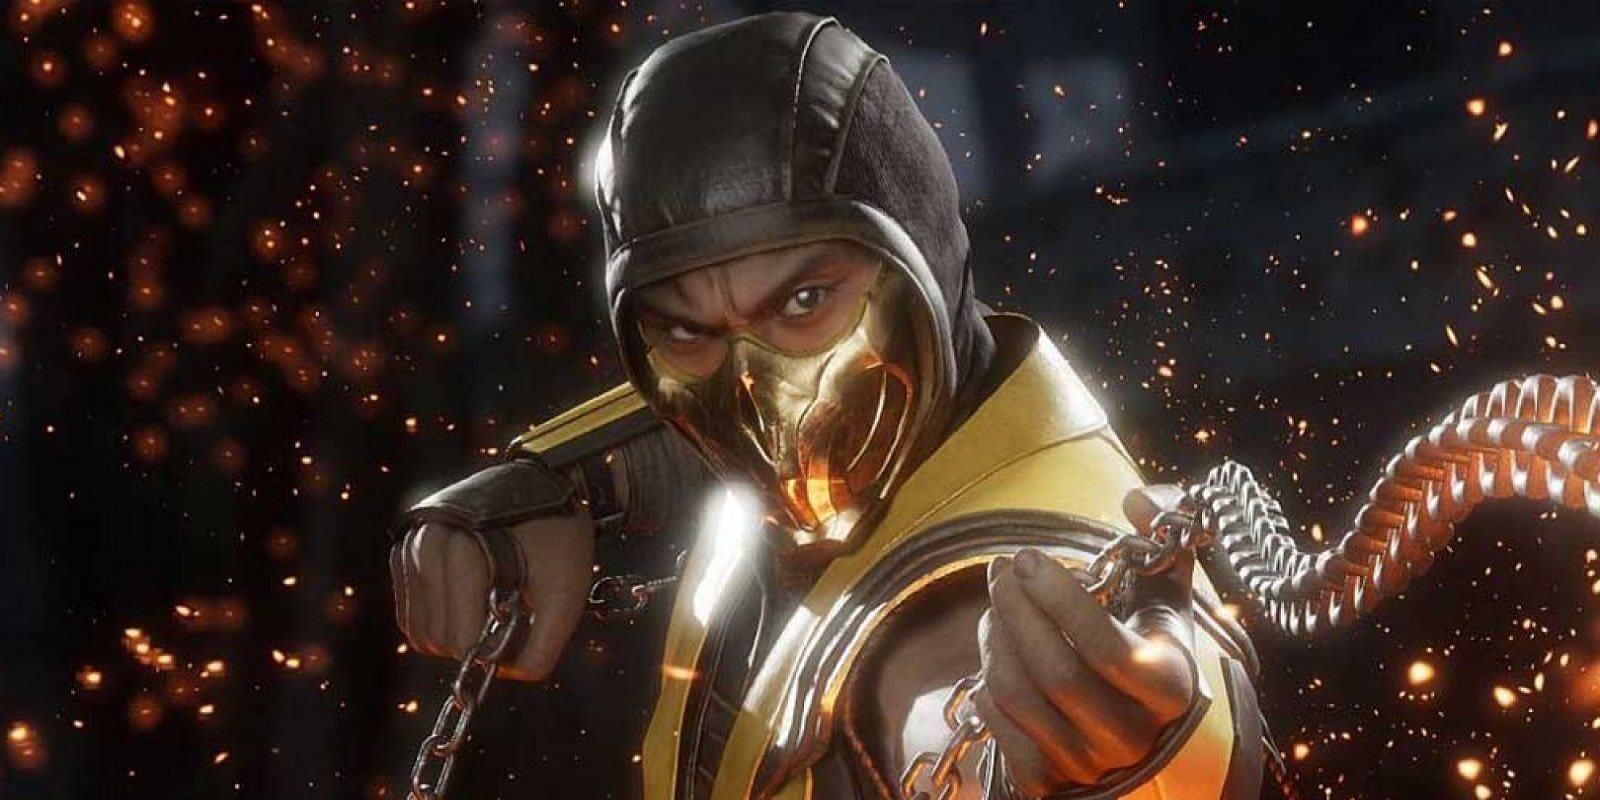 Juega gratis a 'Mortal Kombat 11' en PS4 y Xbox One este fin de semana